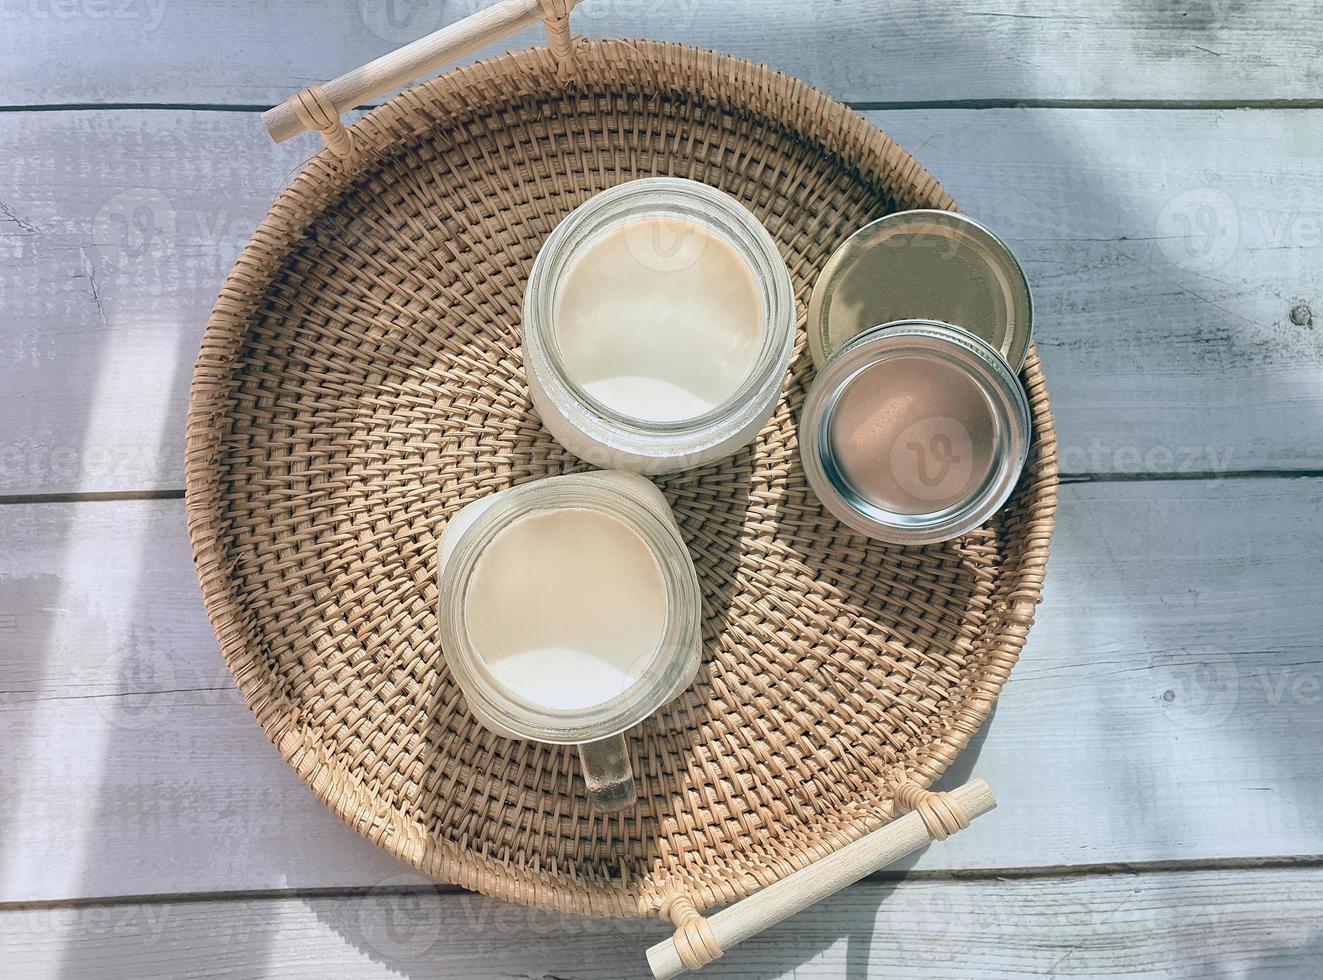 2 dois copos de potes com iogurte natural natural caseiro, iogurte, na bandeja de vime tecida à mão, cesta de vime de forma arredondada, vista de alto ângulo. estilo de café coreano de cor de tema suave foto